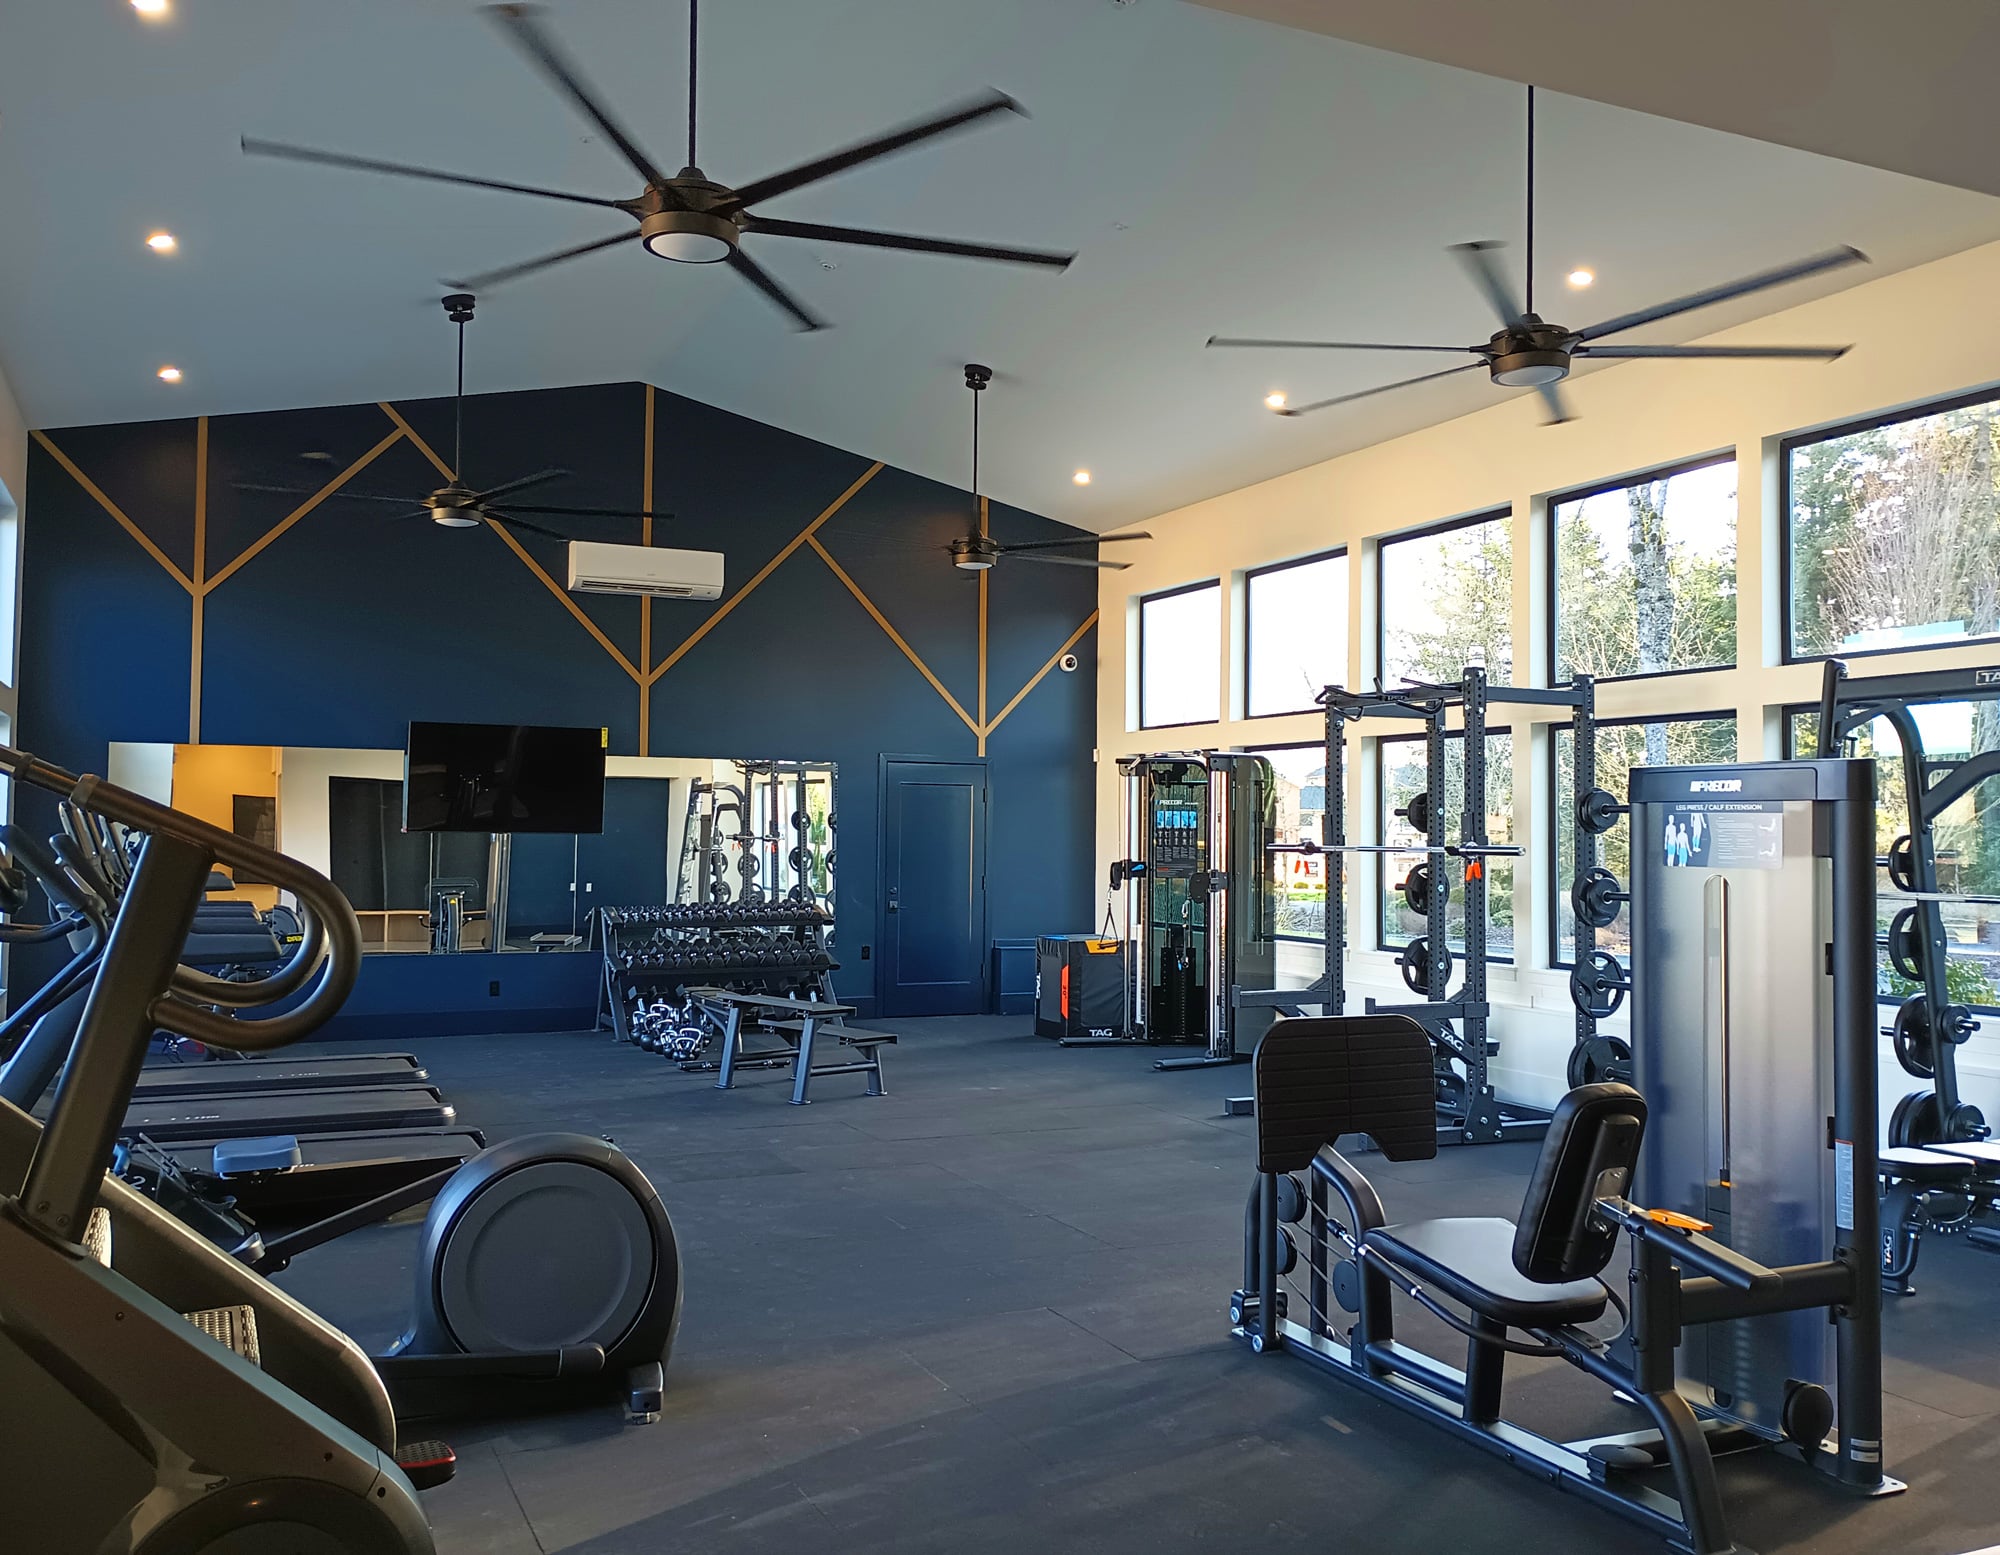 The Tilden Fitness Center